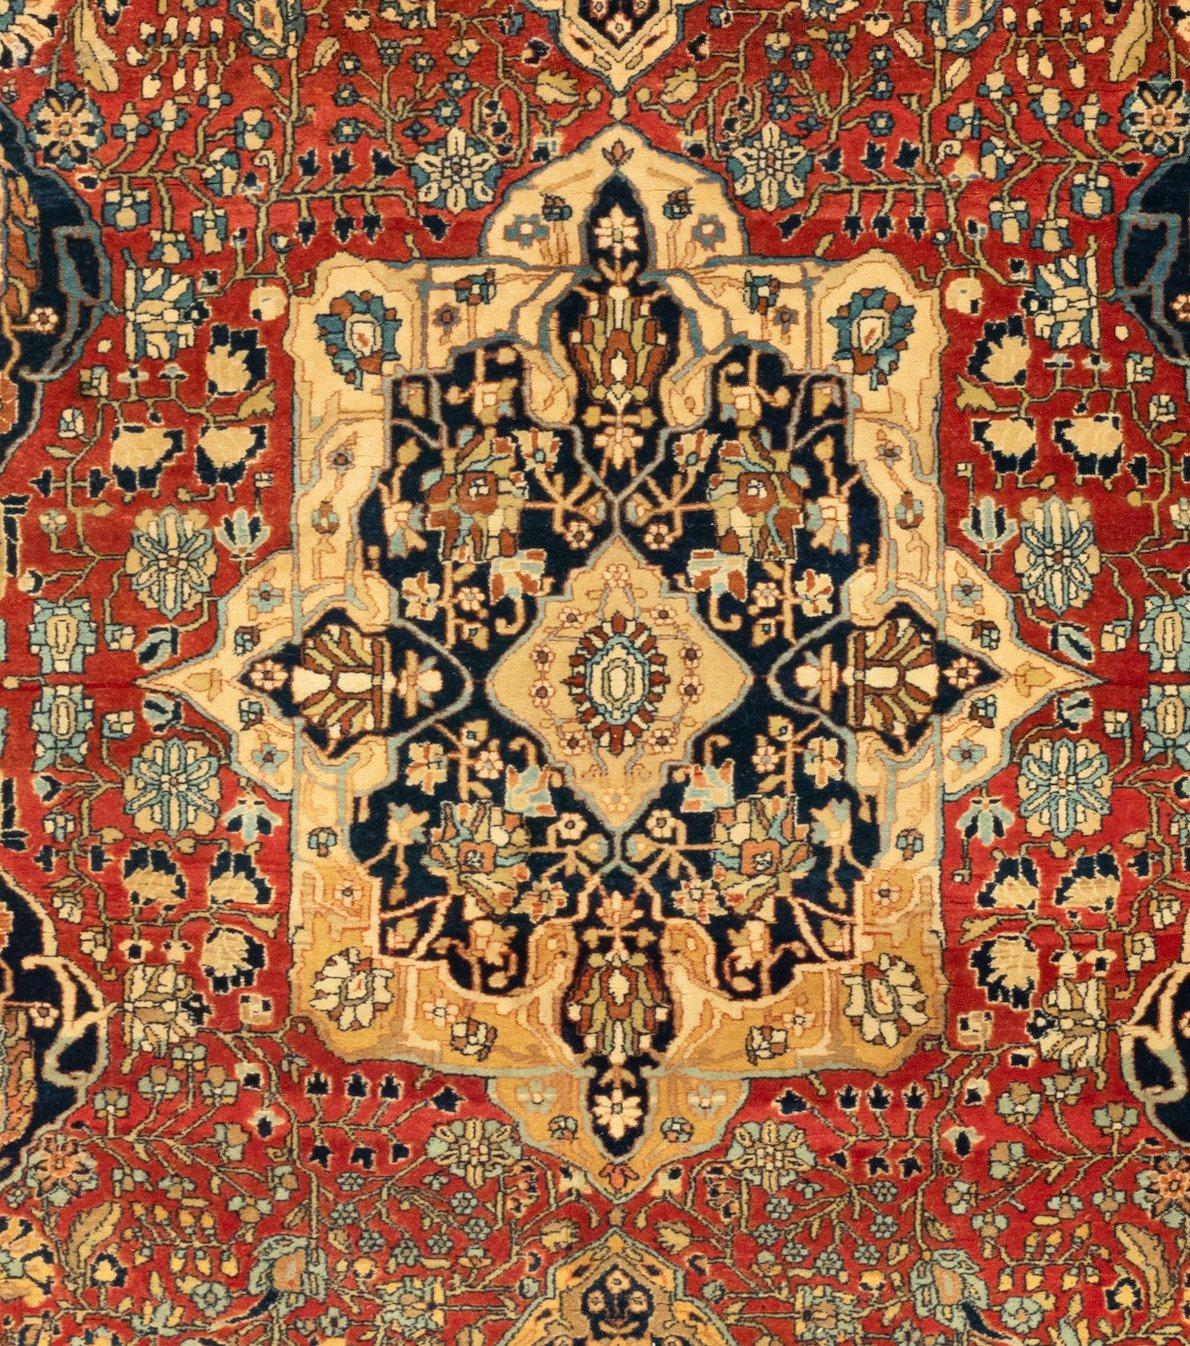 Antike Kashan-Teppiche gehören zu den schönsten persischen Teppichen. Sie werden in Werkstätten in der Stadt Kashan im nördlichen Zentraliran gewebt. Kashan war seit der Safawiden-Dynastie ein Zentrum der Seidenproduktion und hat einige der